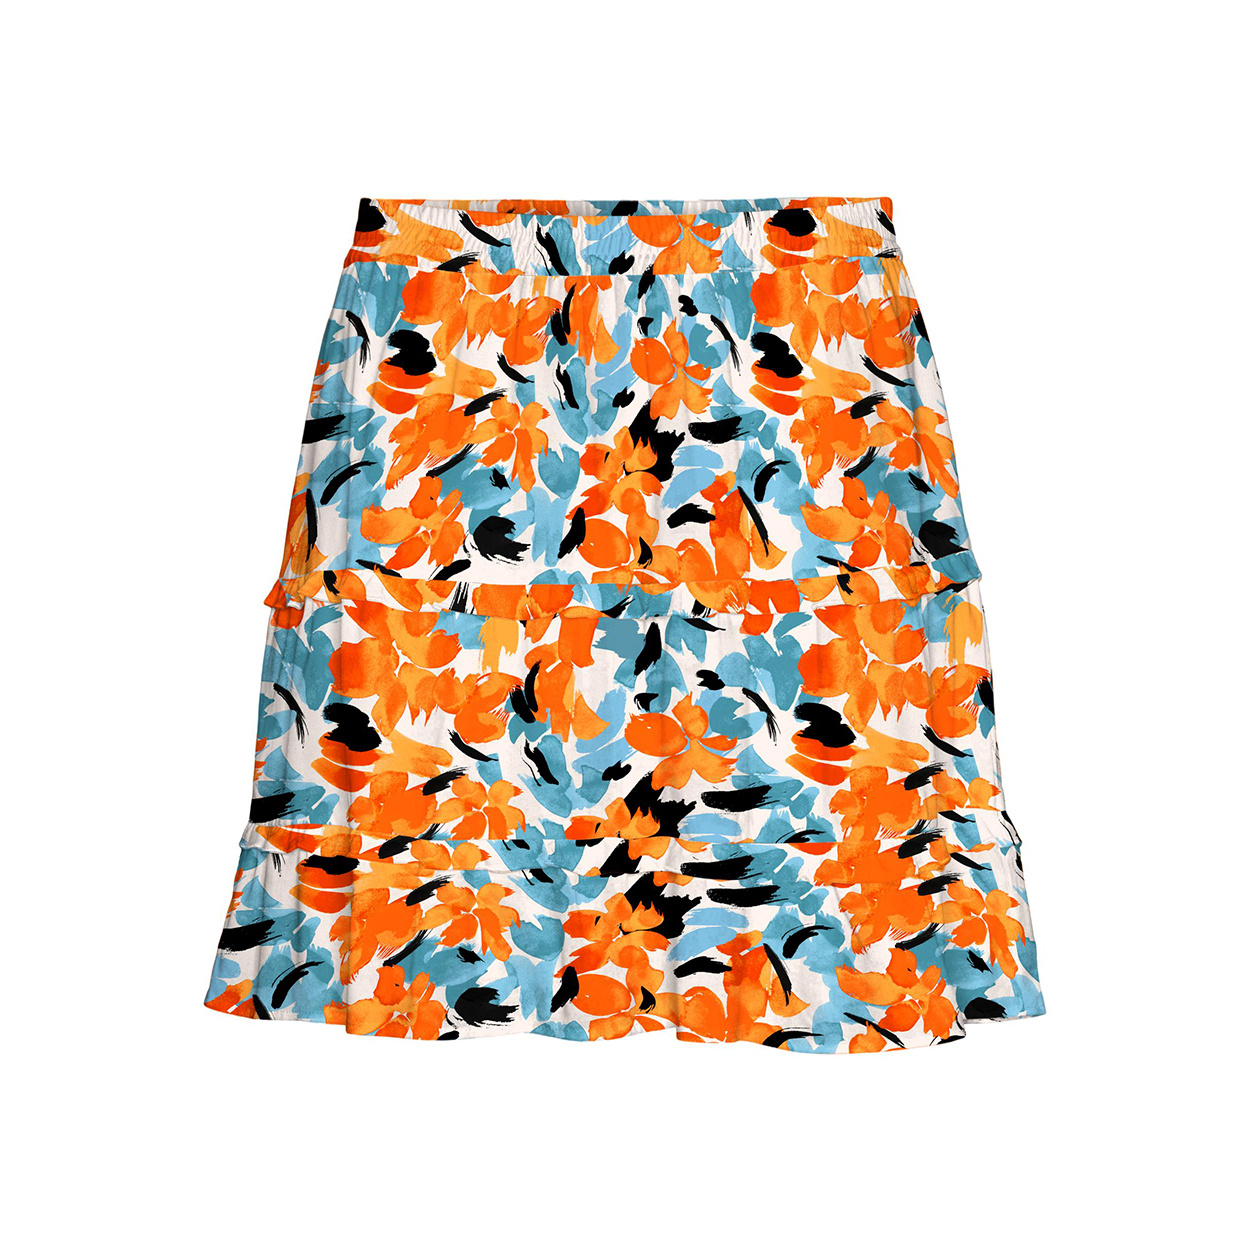 Jupe courte Vero Moda à motifs fleurs orange et bleues